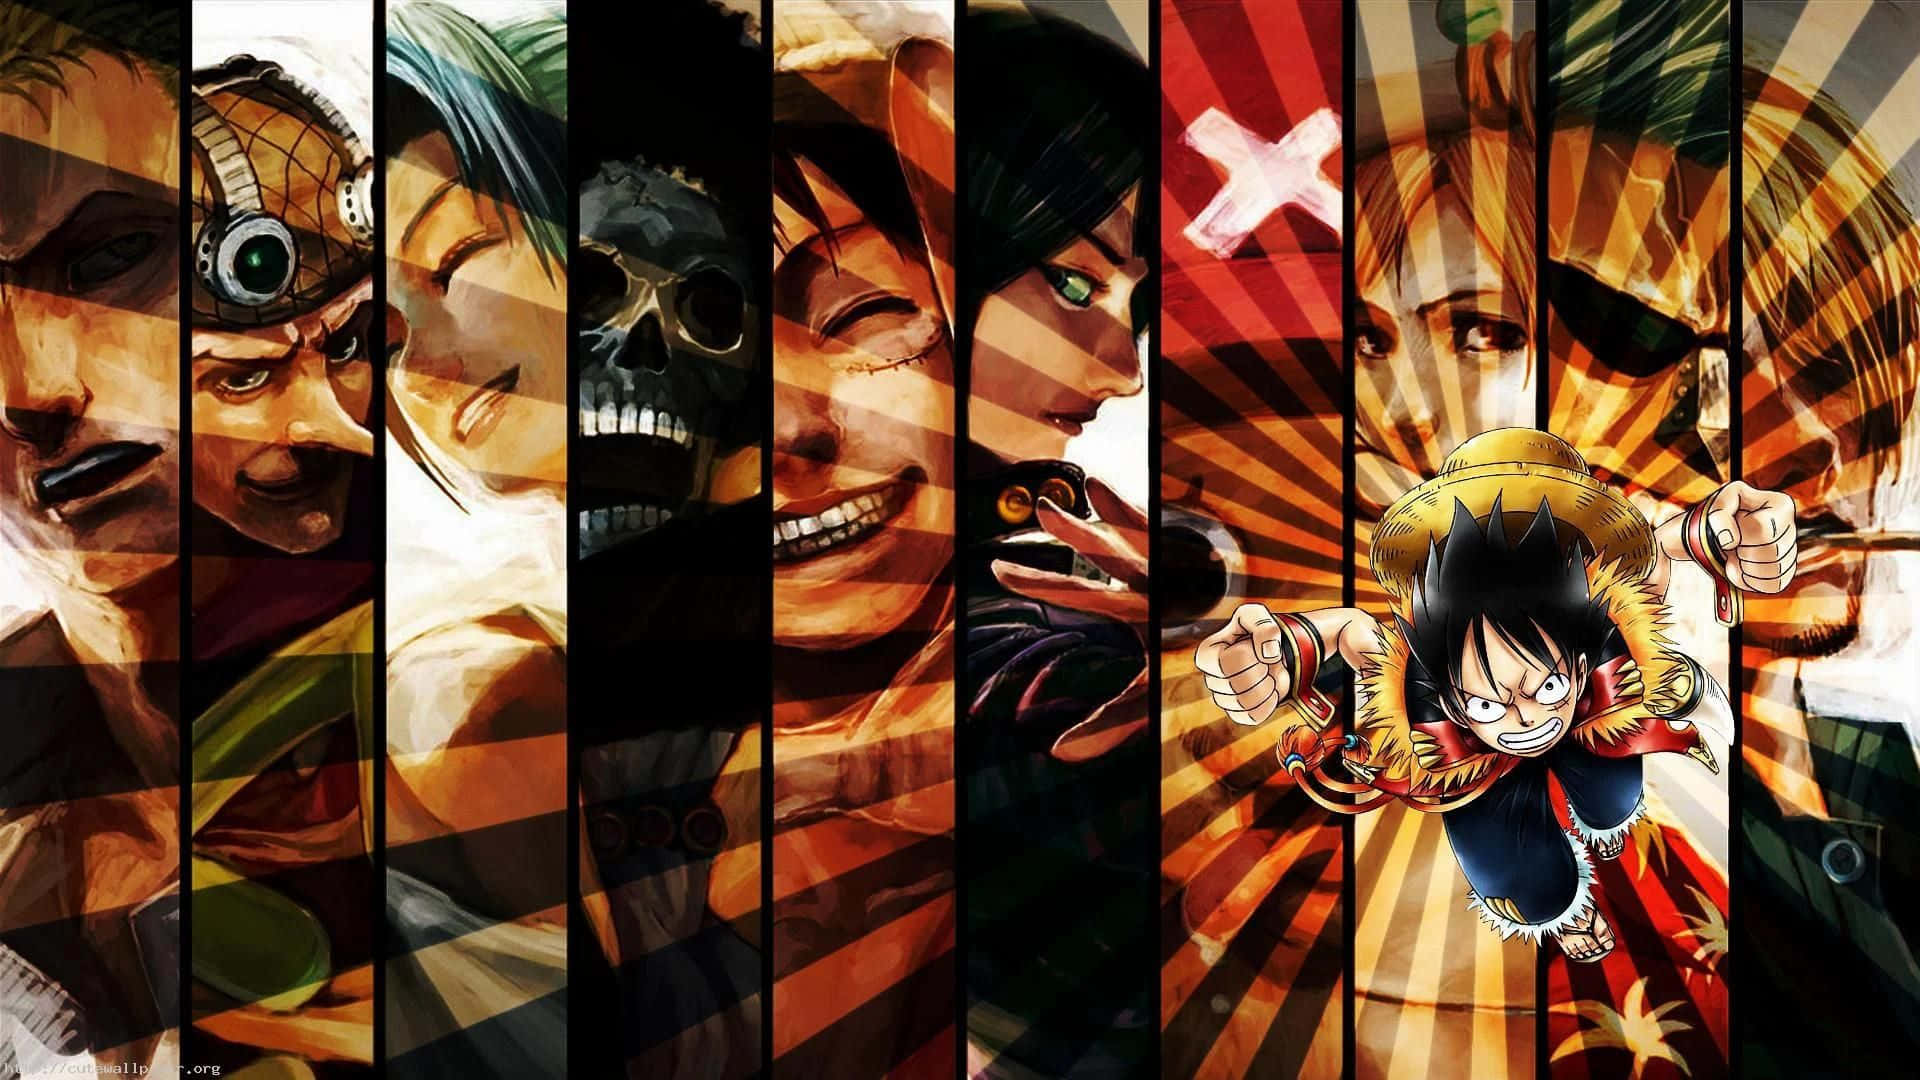 Hintergrundbildvon One Piece